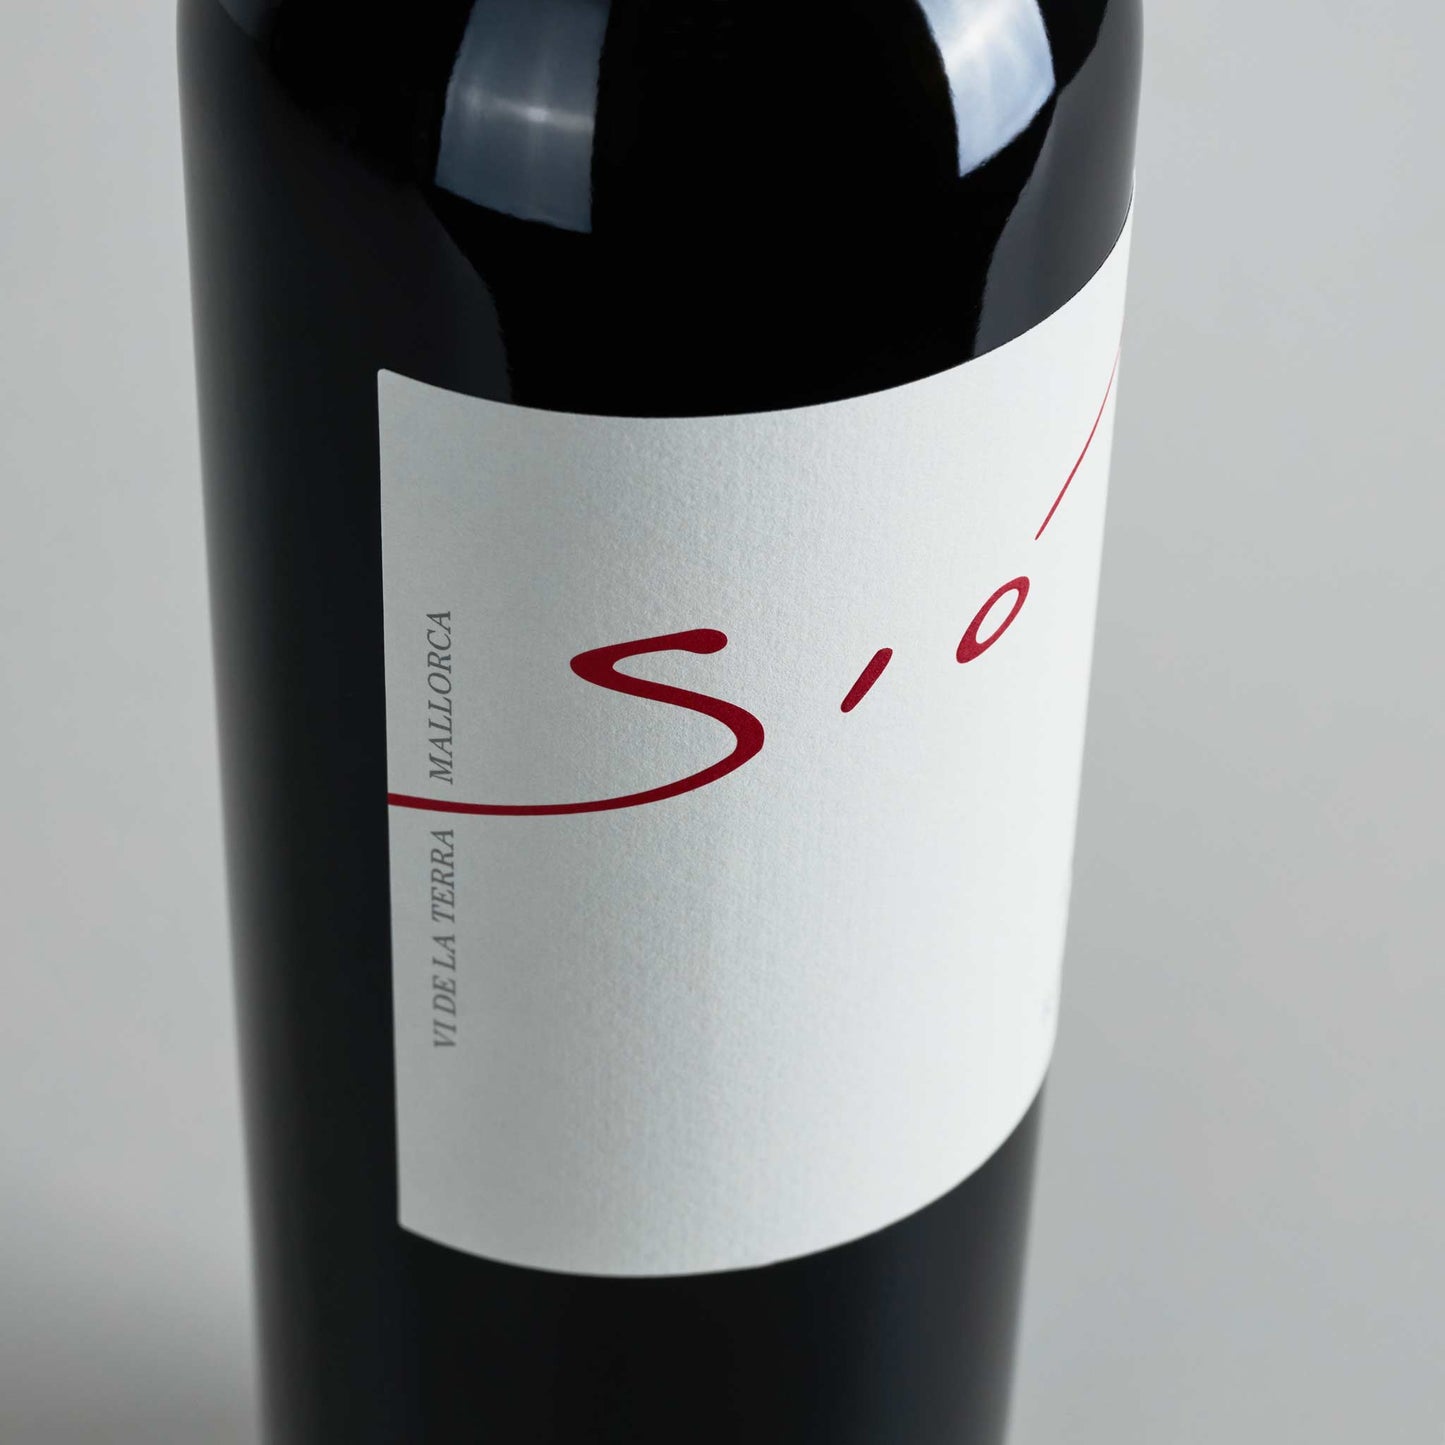 Rotweinflasche stehend weißes Etikett, Aufschrift "Sio", klein daneben: Vide la Terra Mallorca